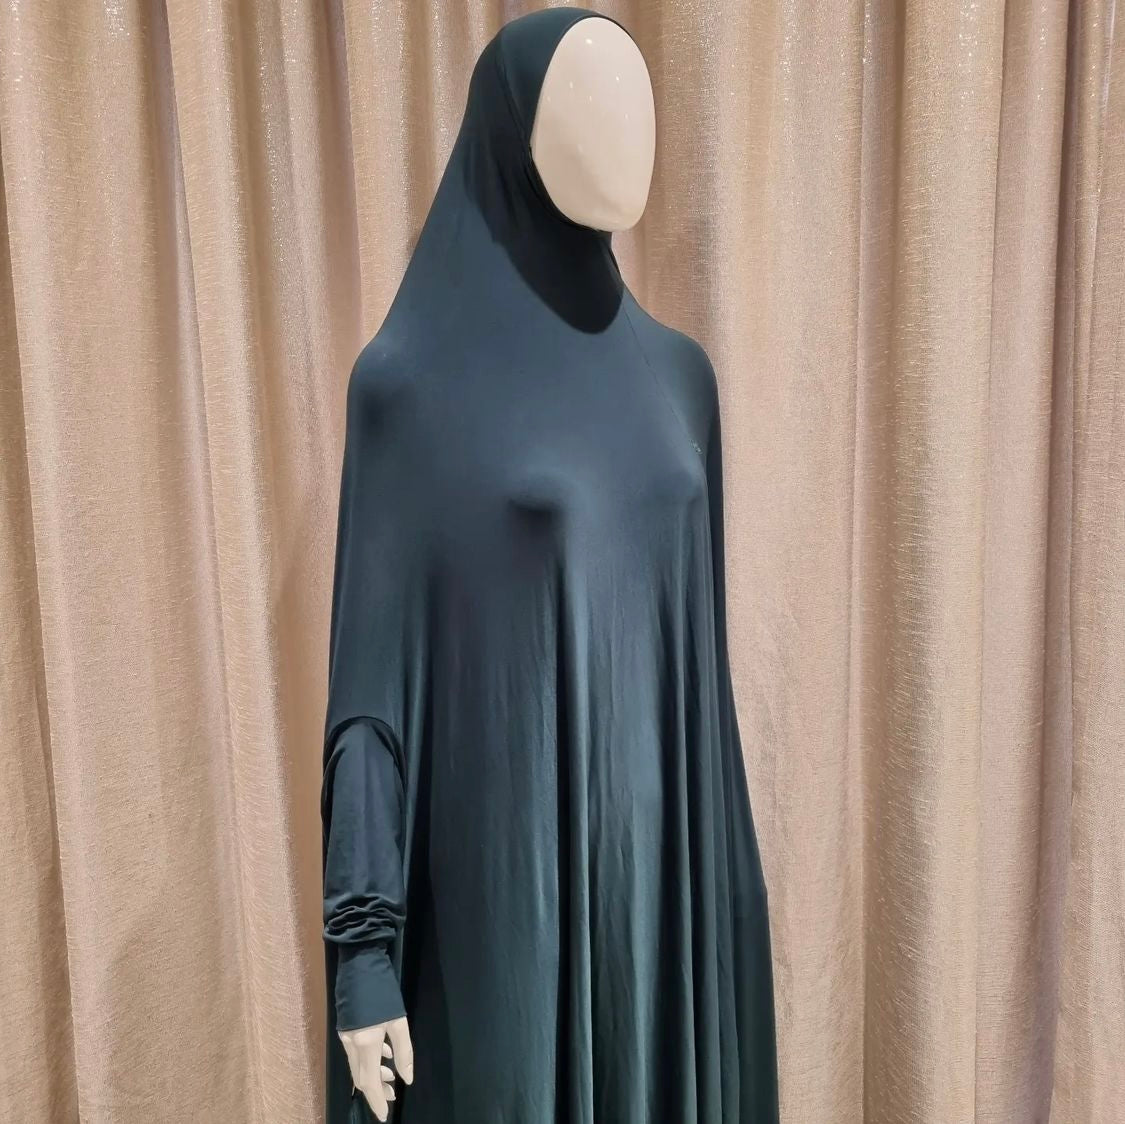 Ladies Burqa with Sleeves